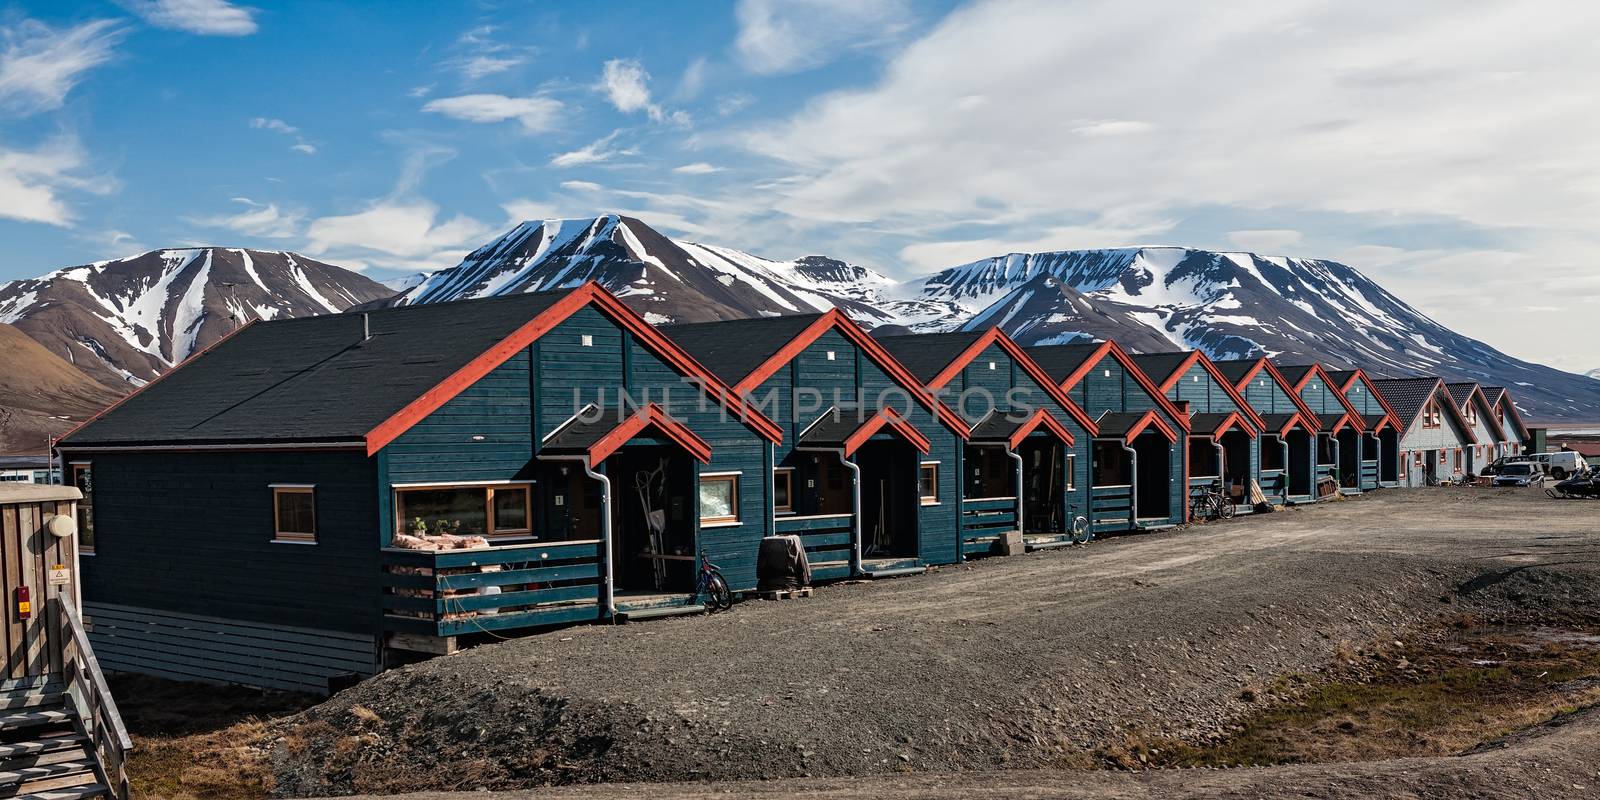 Houses in Longyearbyen, Norway by LuigiMorbidelli